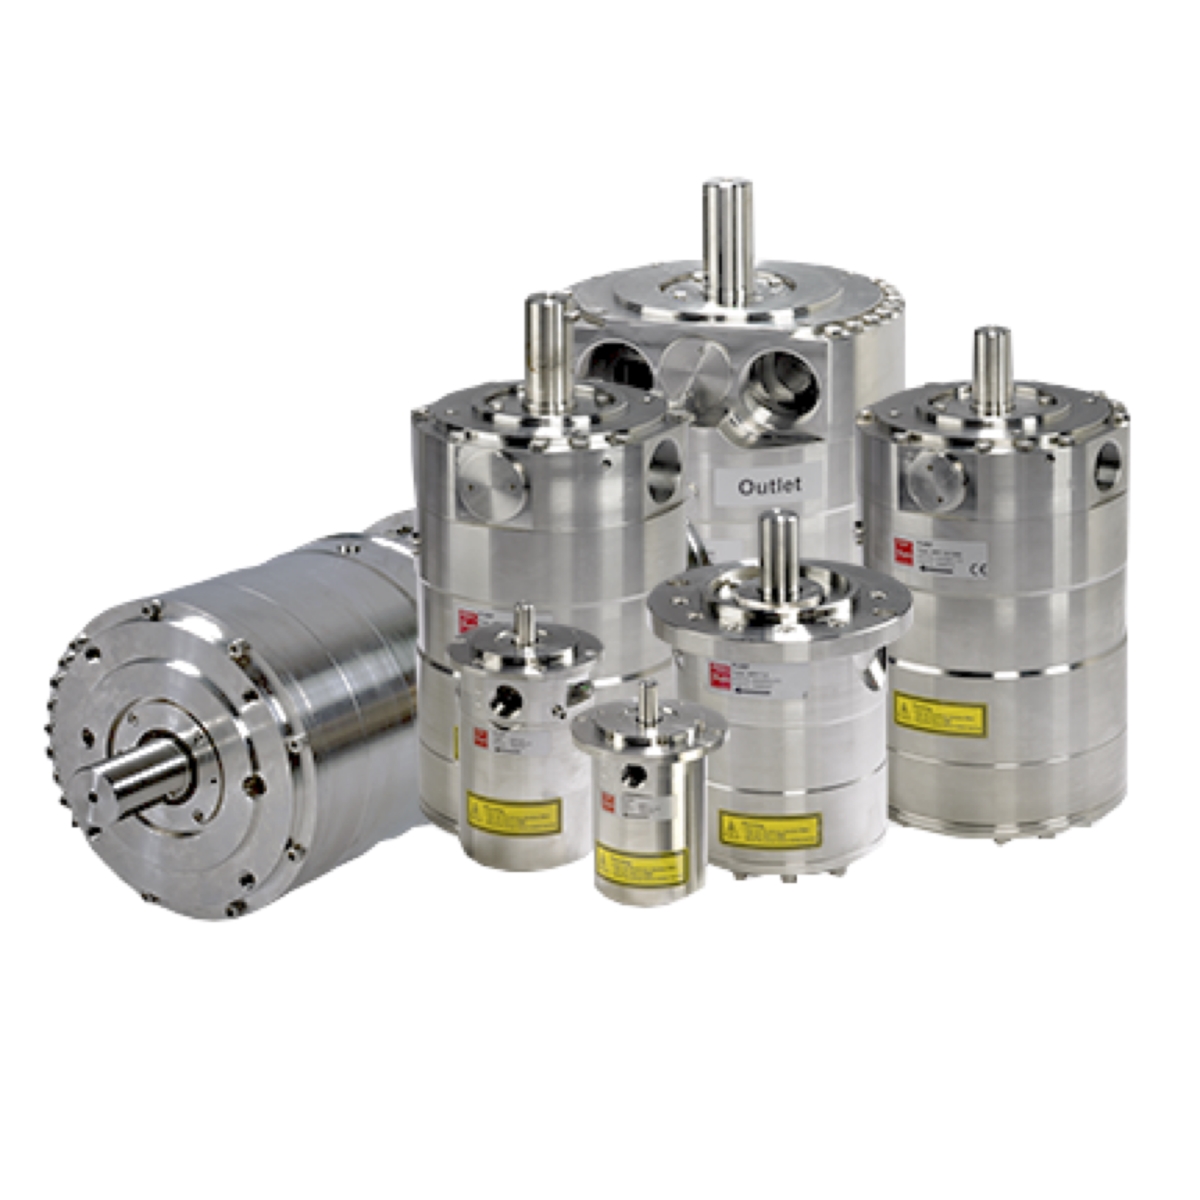 Danfoss APP 0.8 180B3037 Axial High Pump for salt water application, as, seawater desalination.